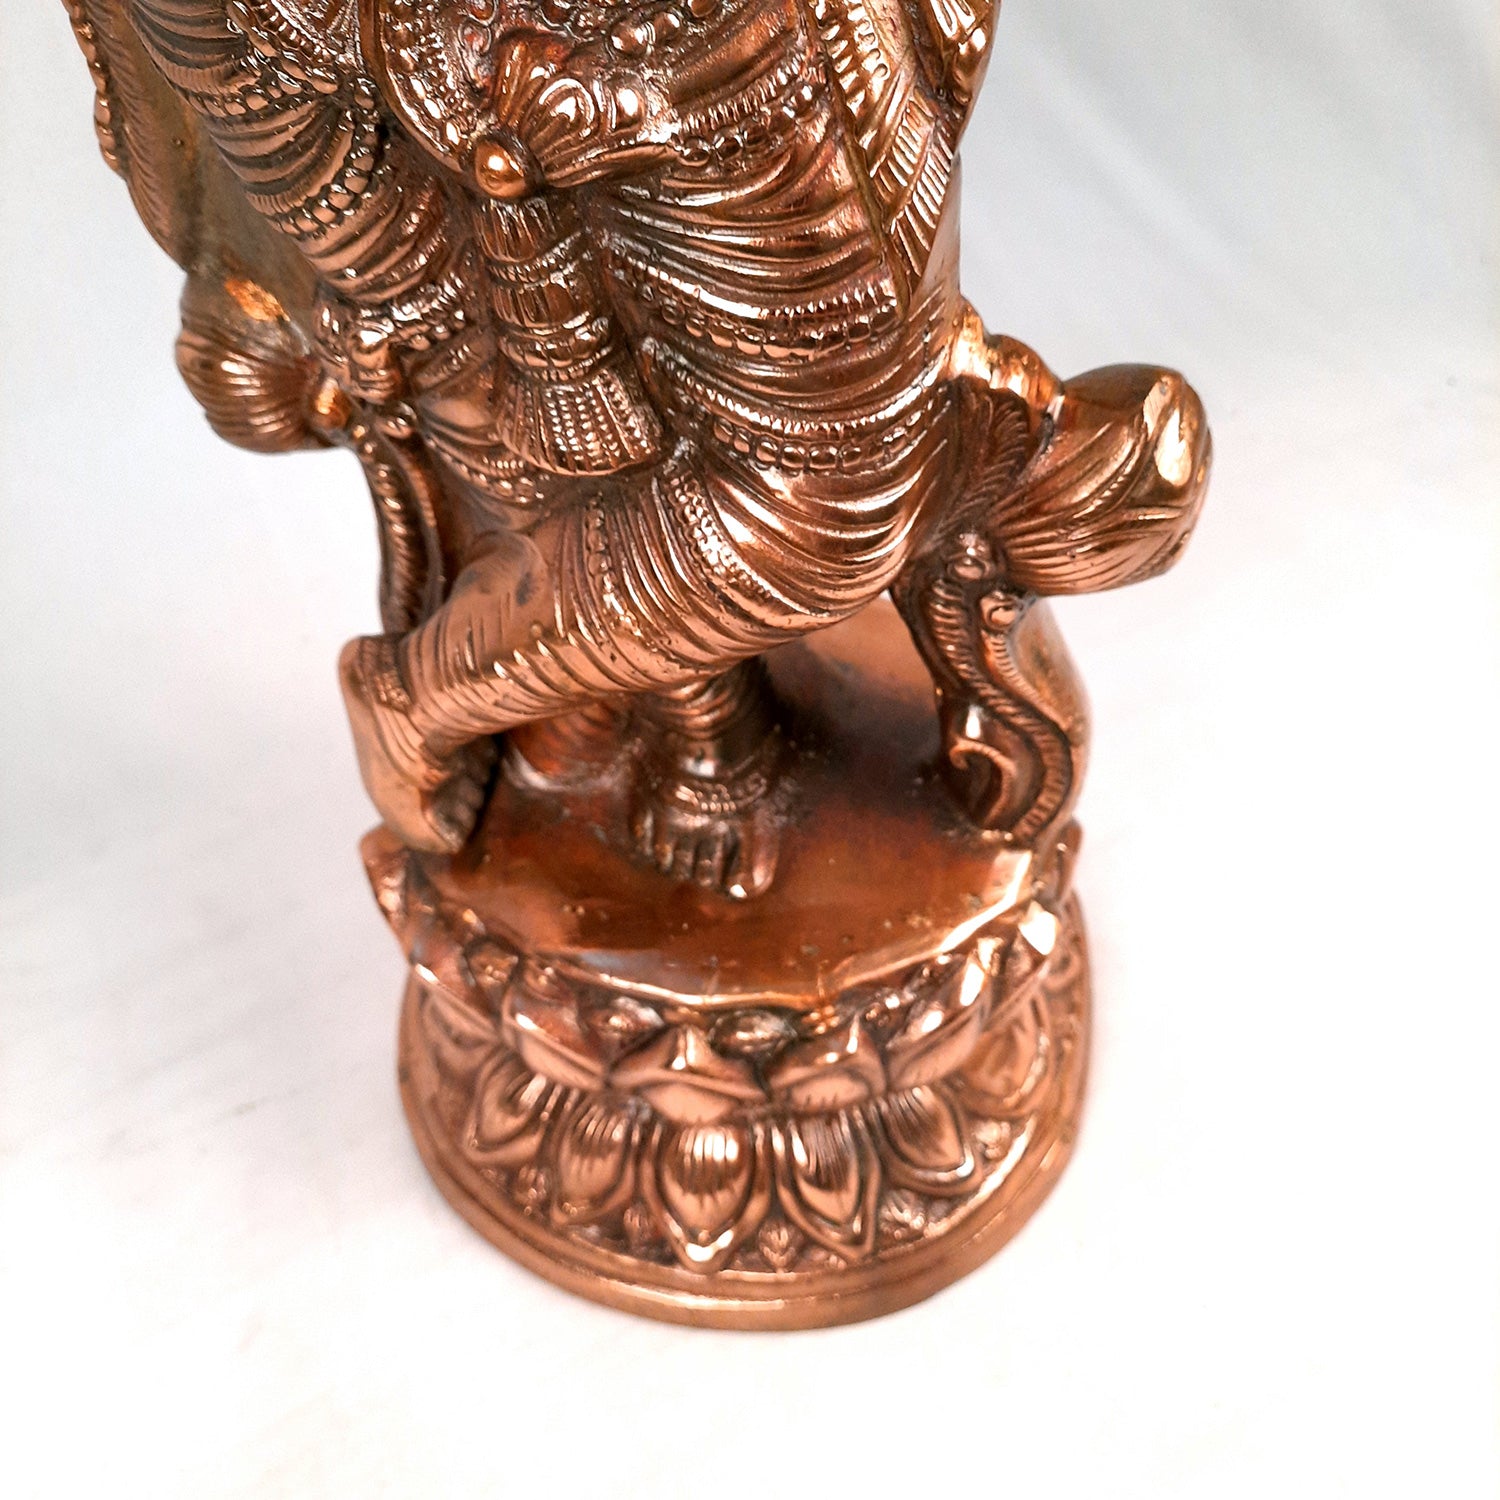 Lord Krishna Statue | Shri Krishna Idol | Krishna Ji Murti Big Size - For Pooja, Temple, Office & Home Decor - 31 Inch - Apkamart